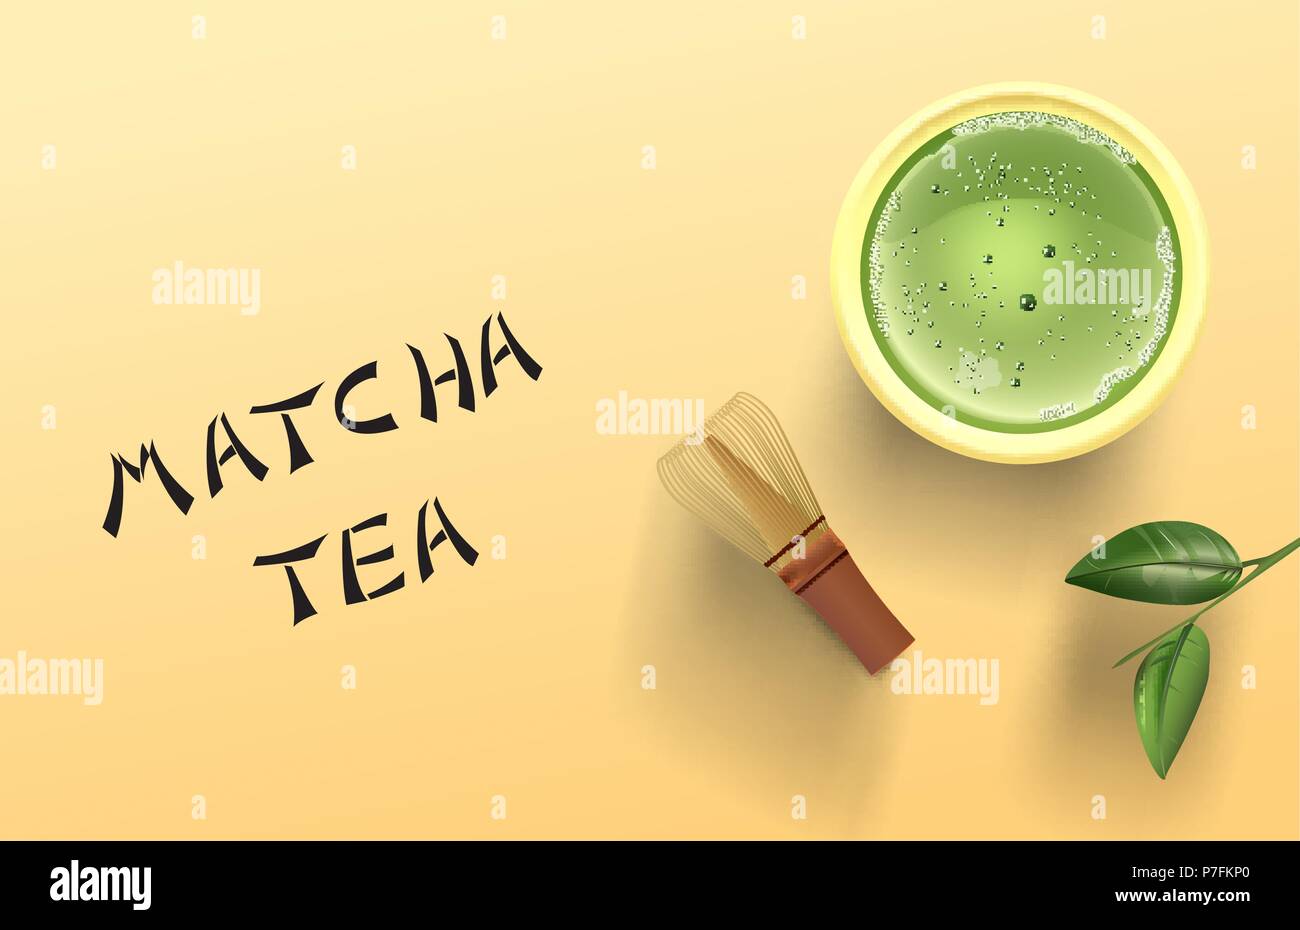 Eps 10 Vector Illustration von Matcha Tee, Kaffee Schneebesen, und Matcha Tee Blatt auf gelben Hintergrund, Ansicht von oben, eps 10 Vektor, Transparenz und Verlaufsgitter Stock Vektor